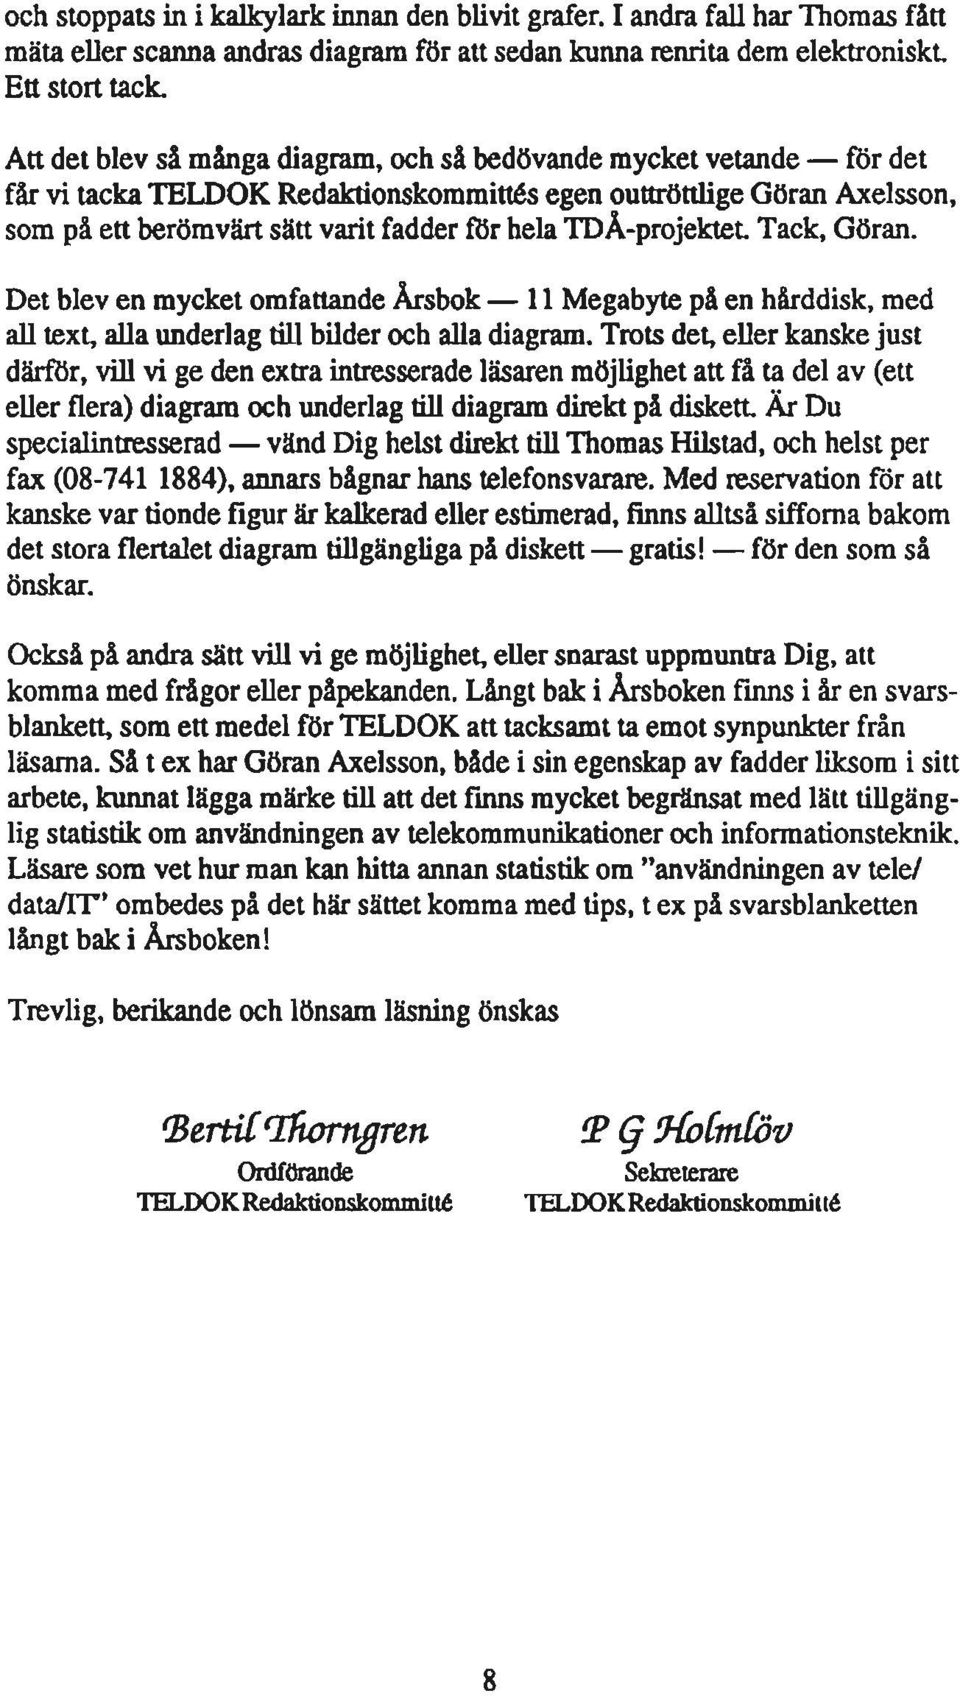 IDÅ-projektet Tack, Göran. Det blev en mycket omfattande Årsbok - Il Megabyte på en hårddisk, med all text, alla underlag till bilder och alla diagram.